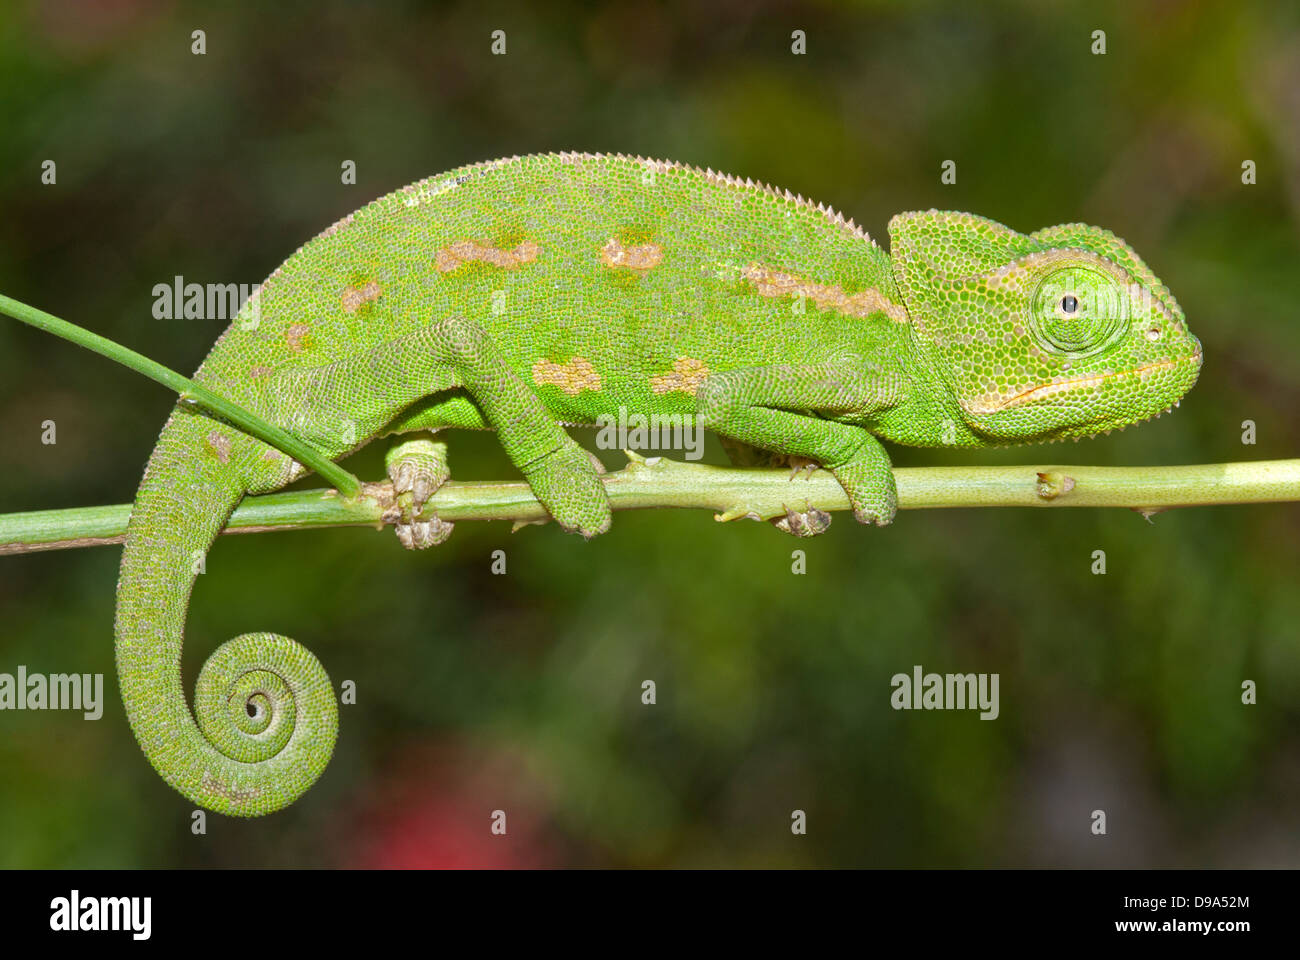 Chameleon on branch Stock Photo